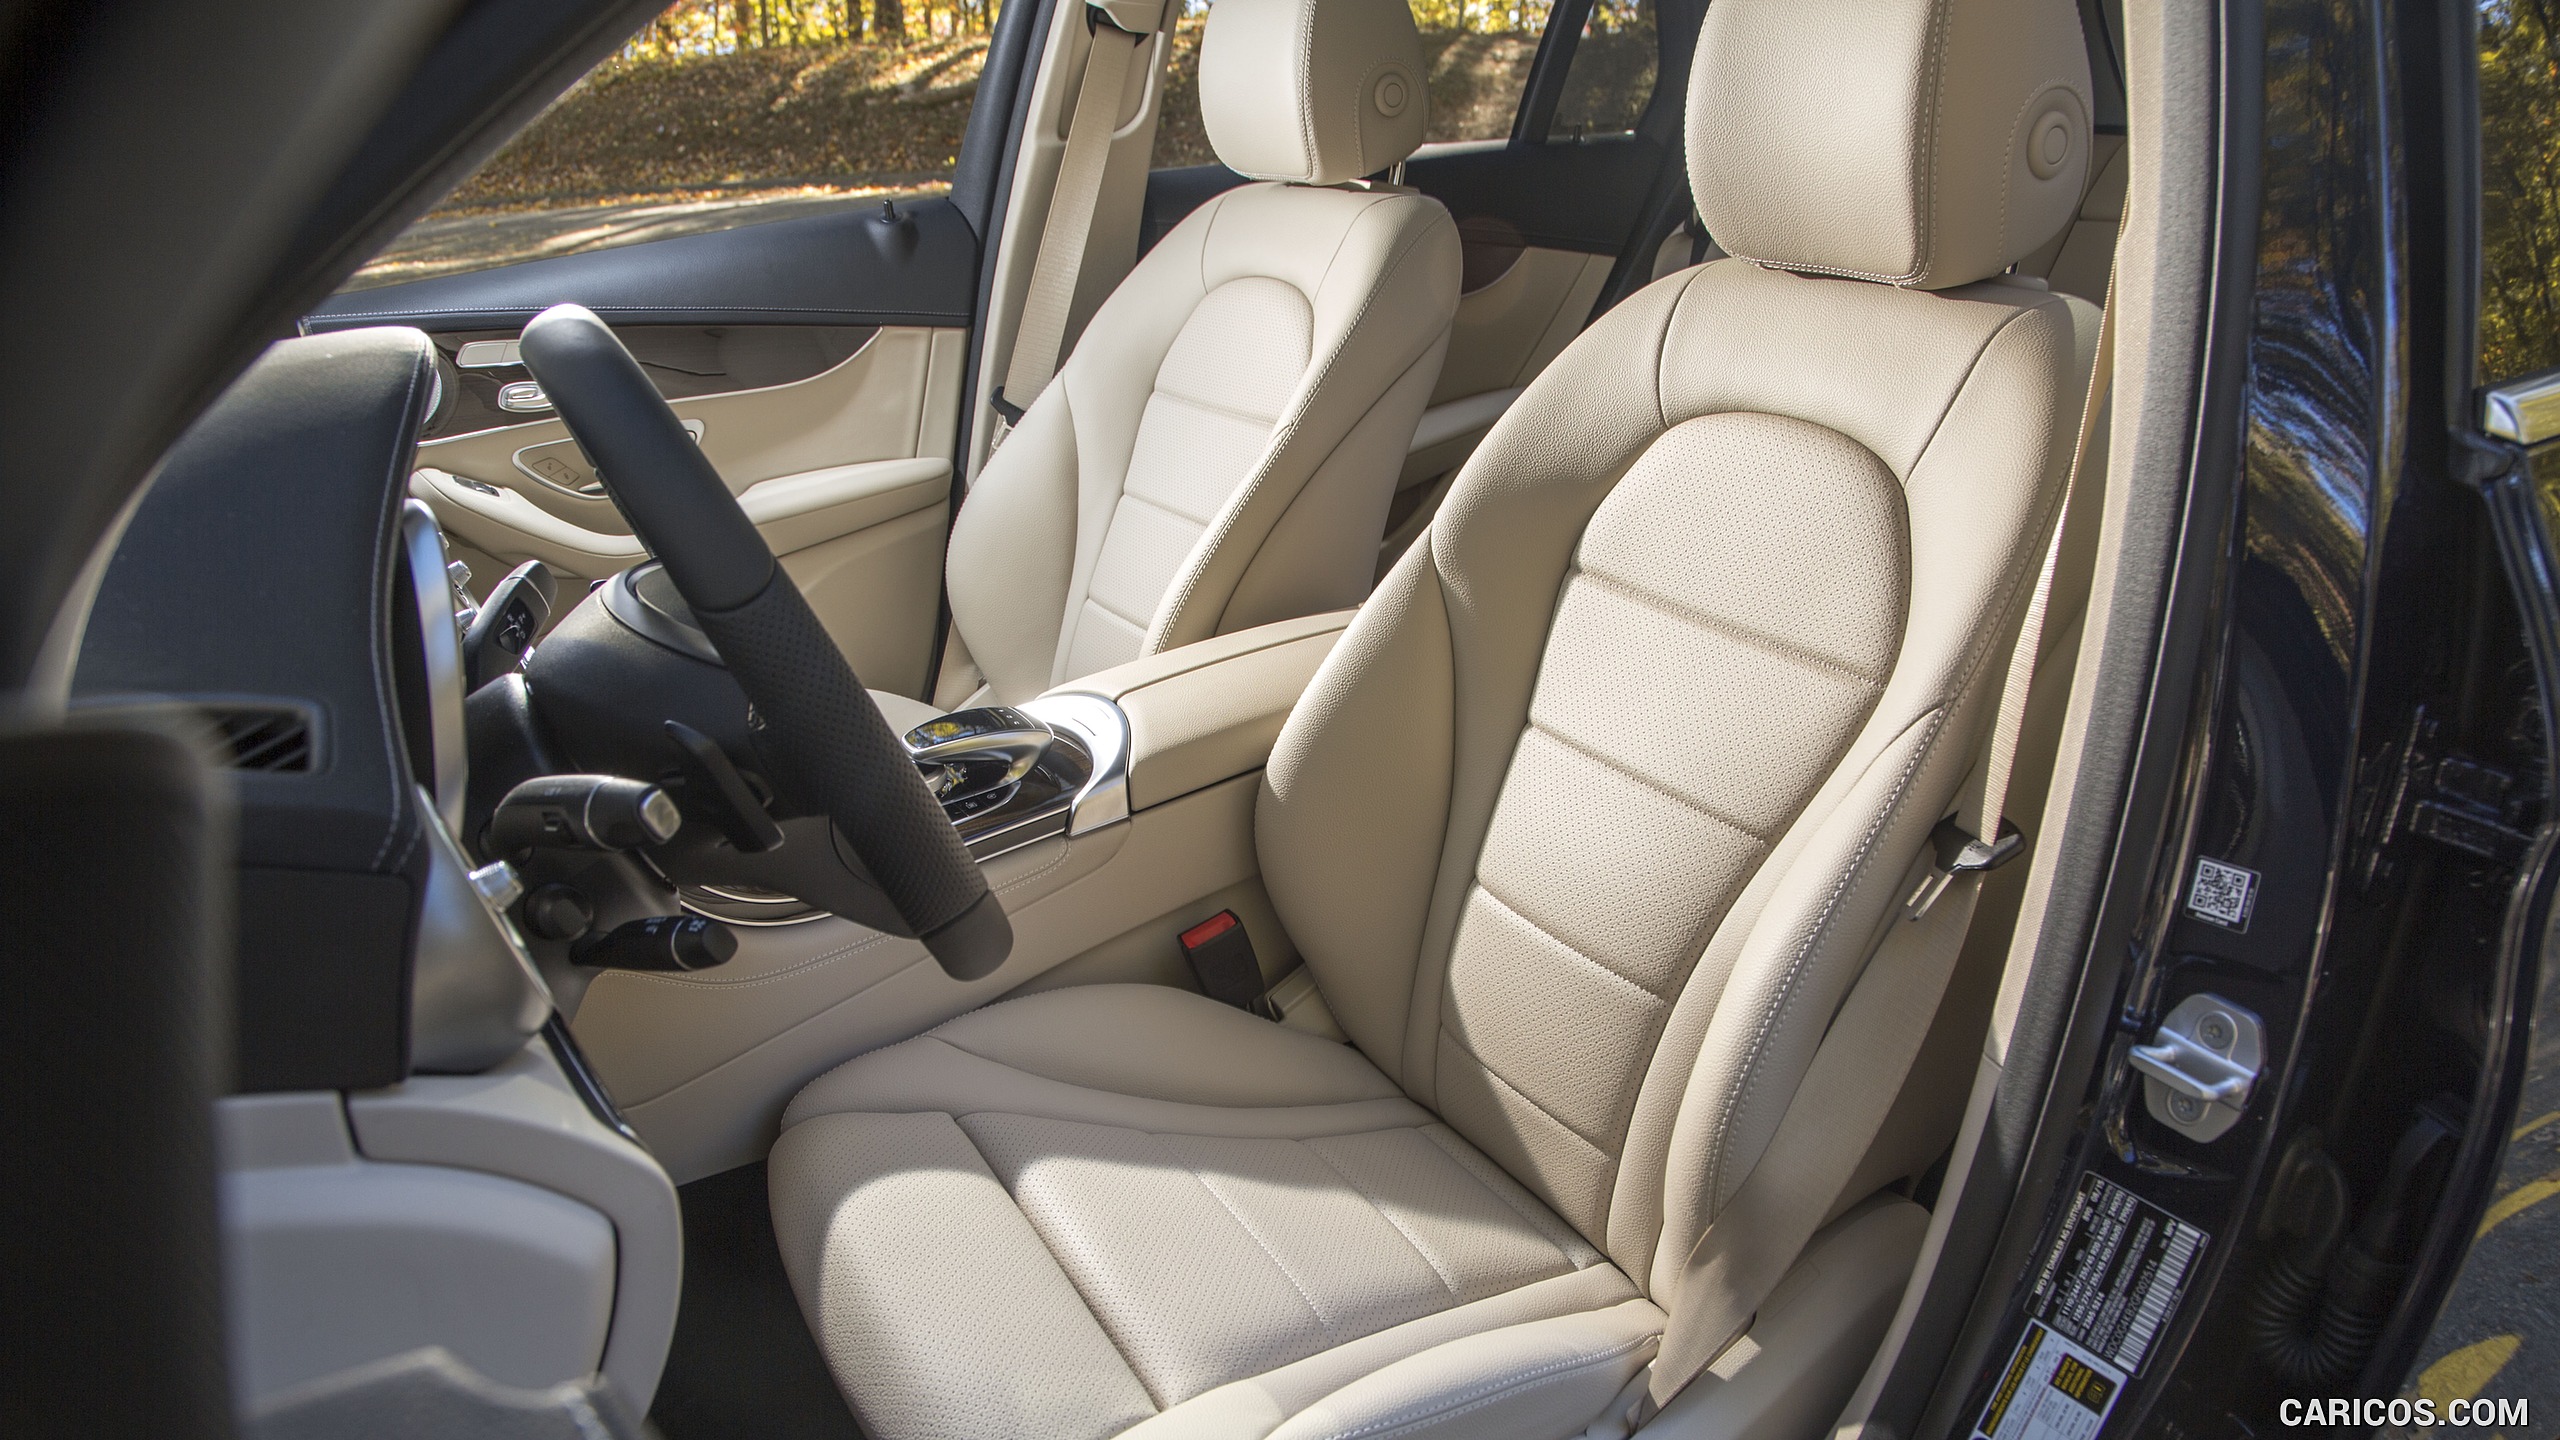 2016 Mercedes-Benz GLC GLC300 4MATIC (US-Spec) - Interior, Front Seats, #96 of 180